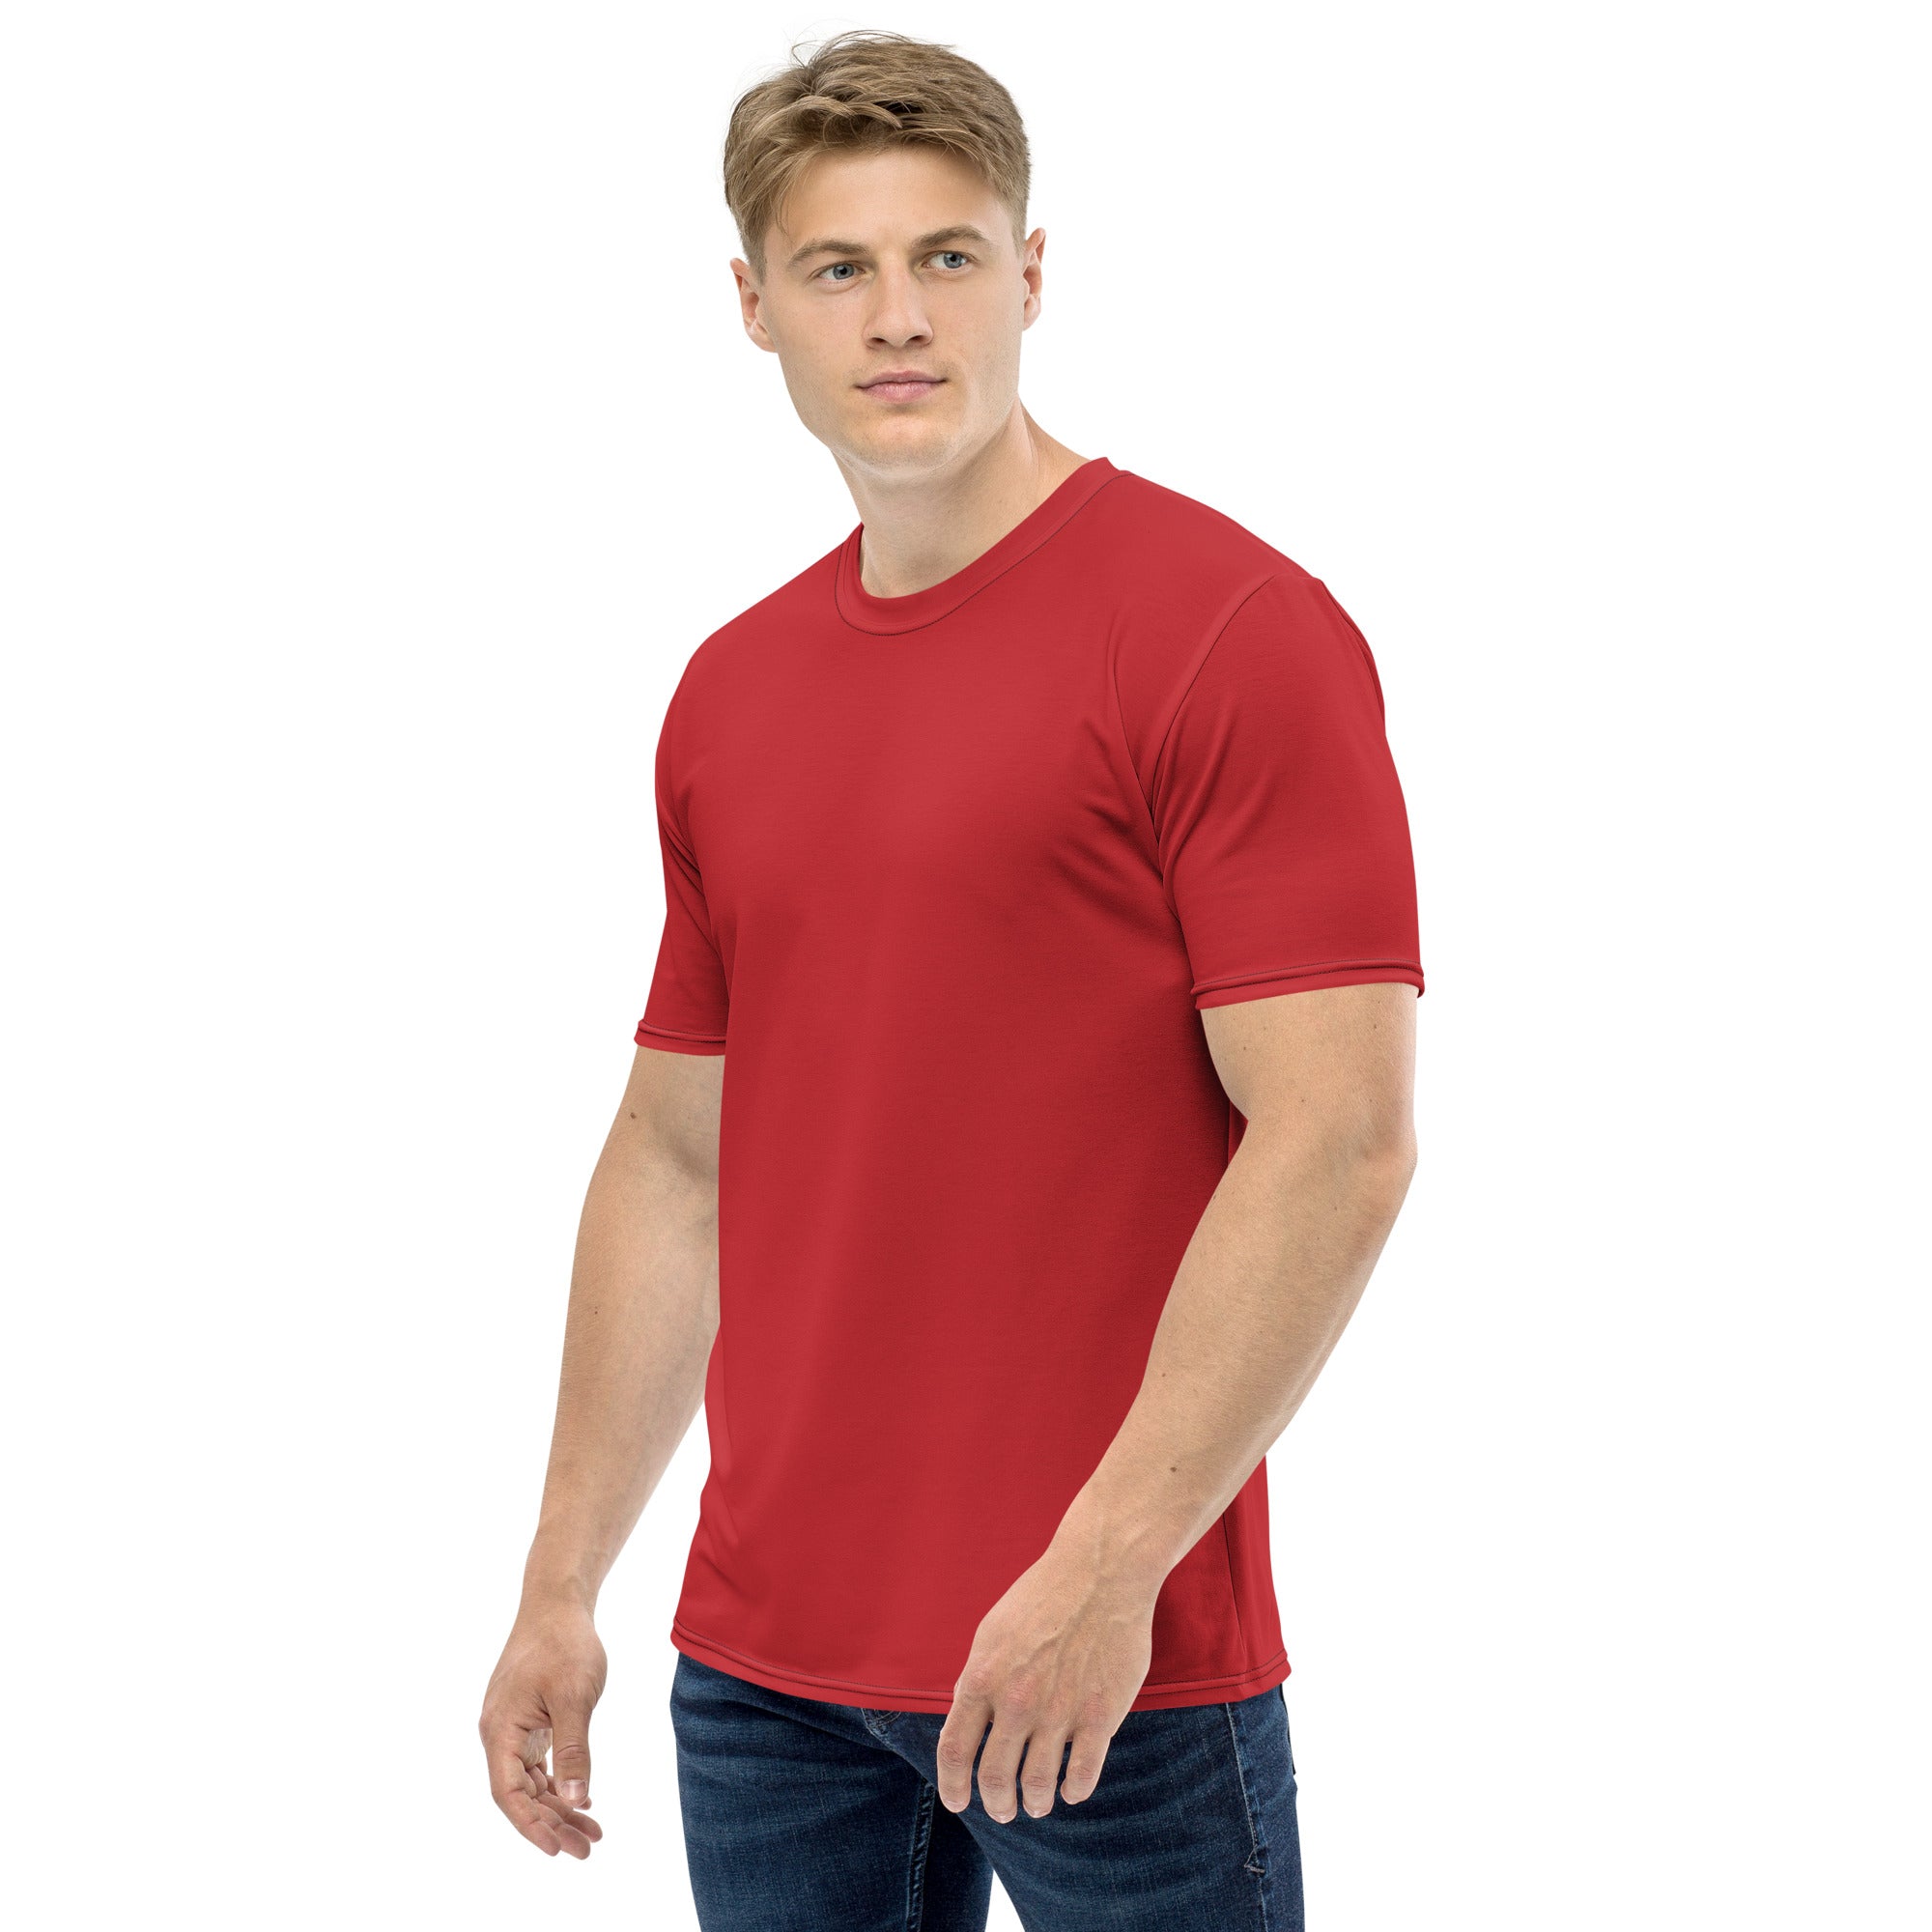 Crimson Red Men's T-shirt